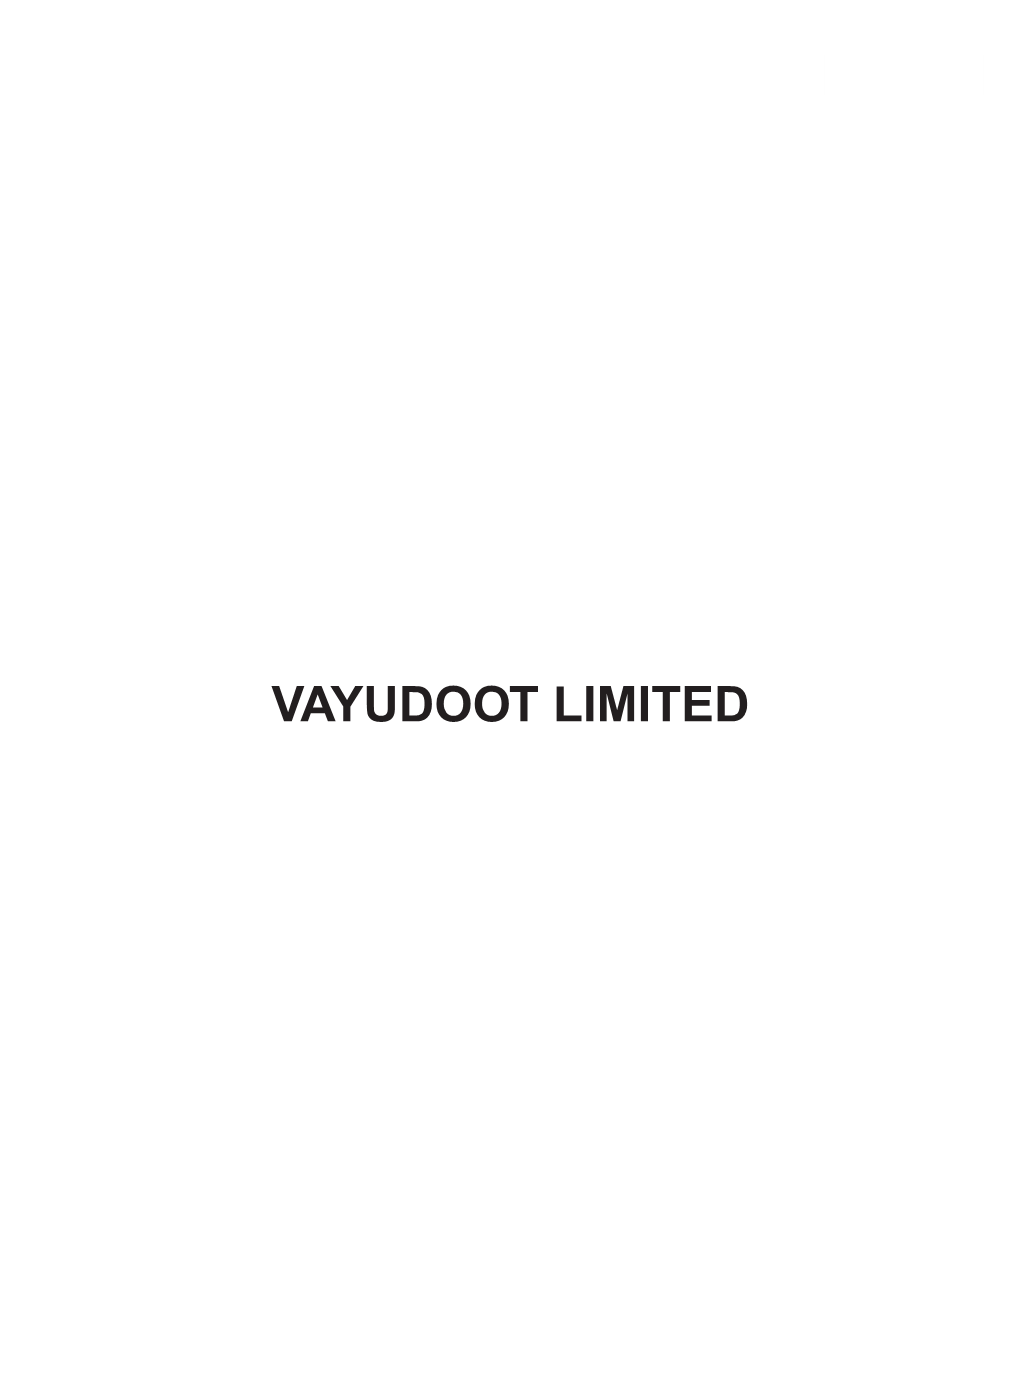 Vayudoot Limited Vayudoot